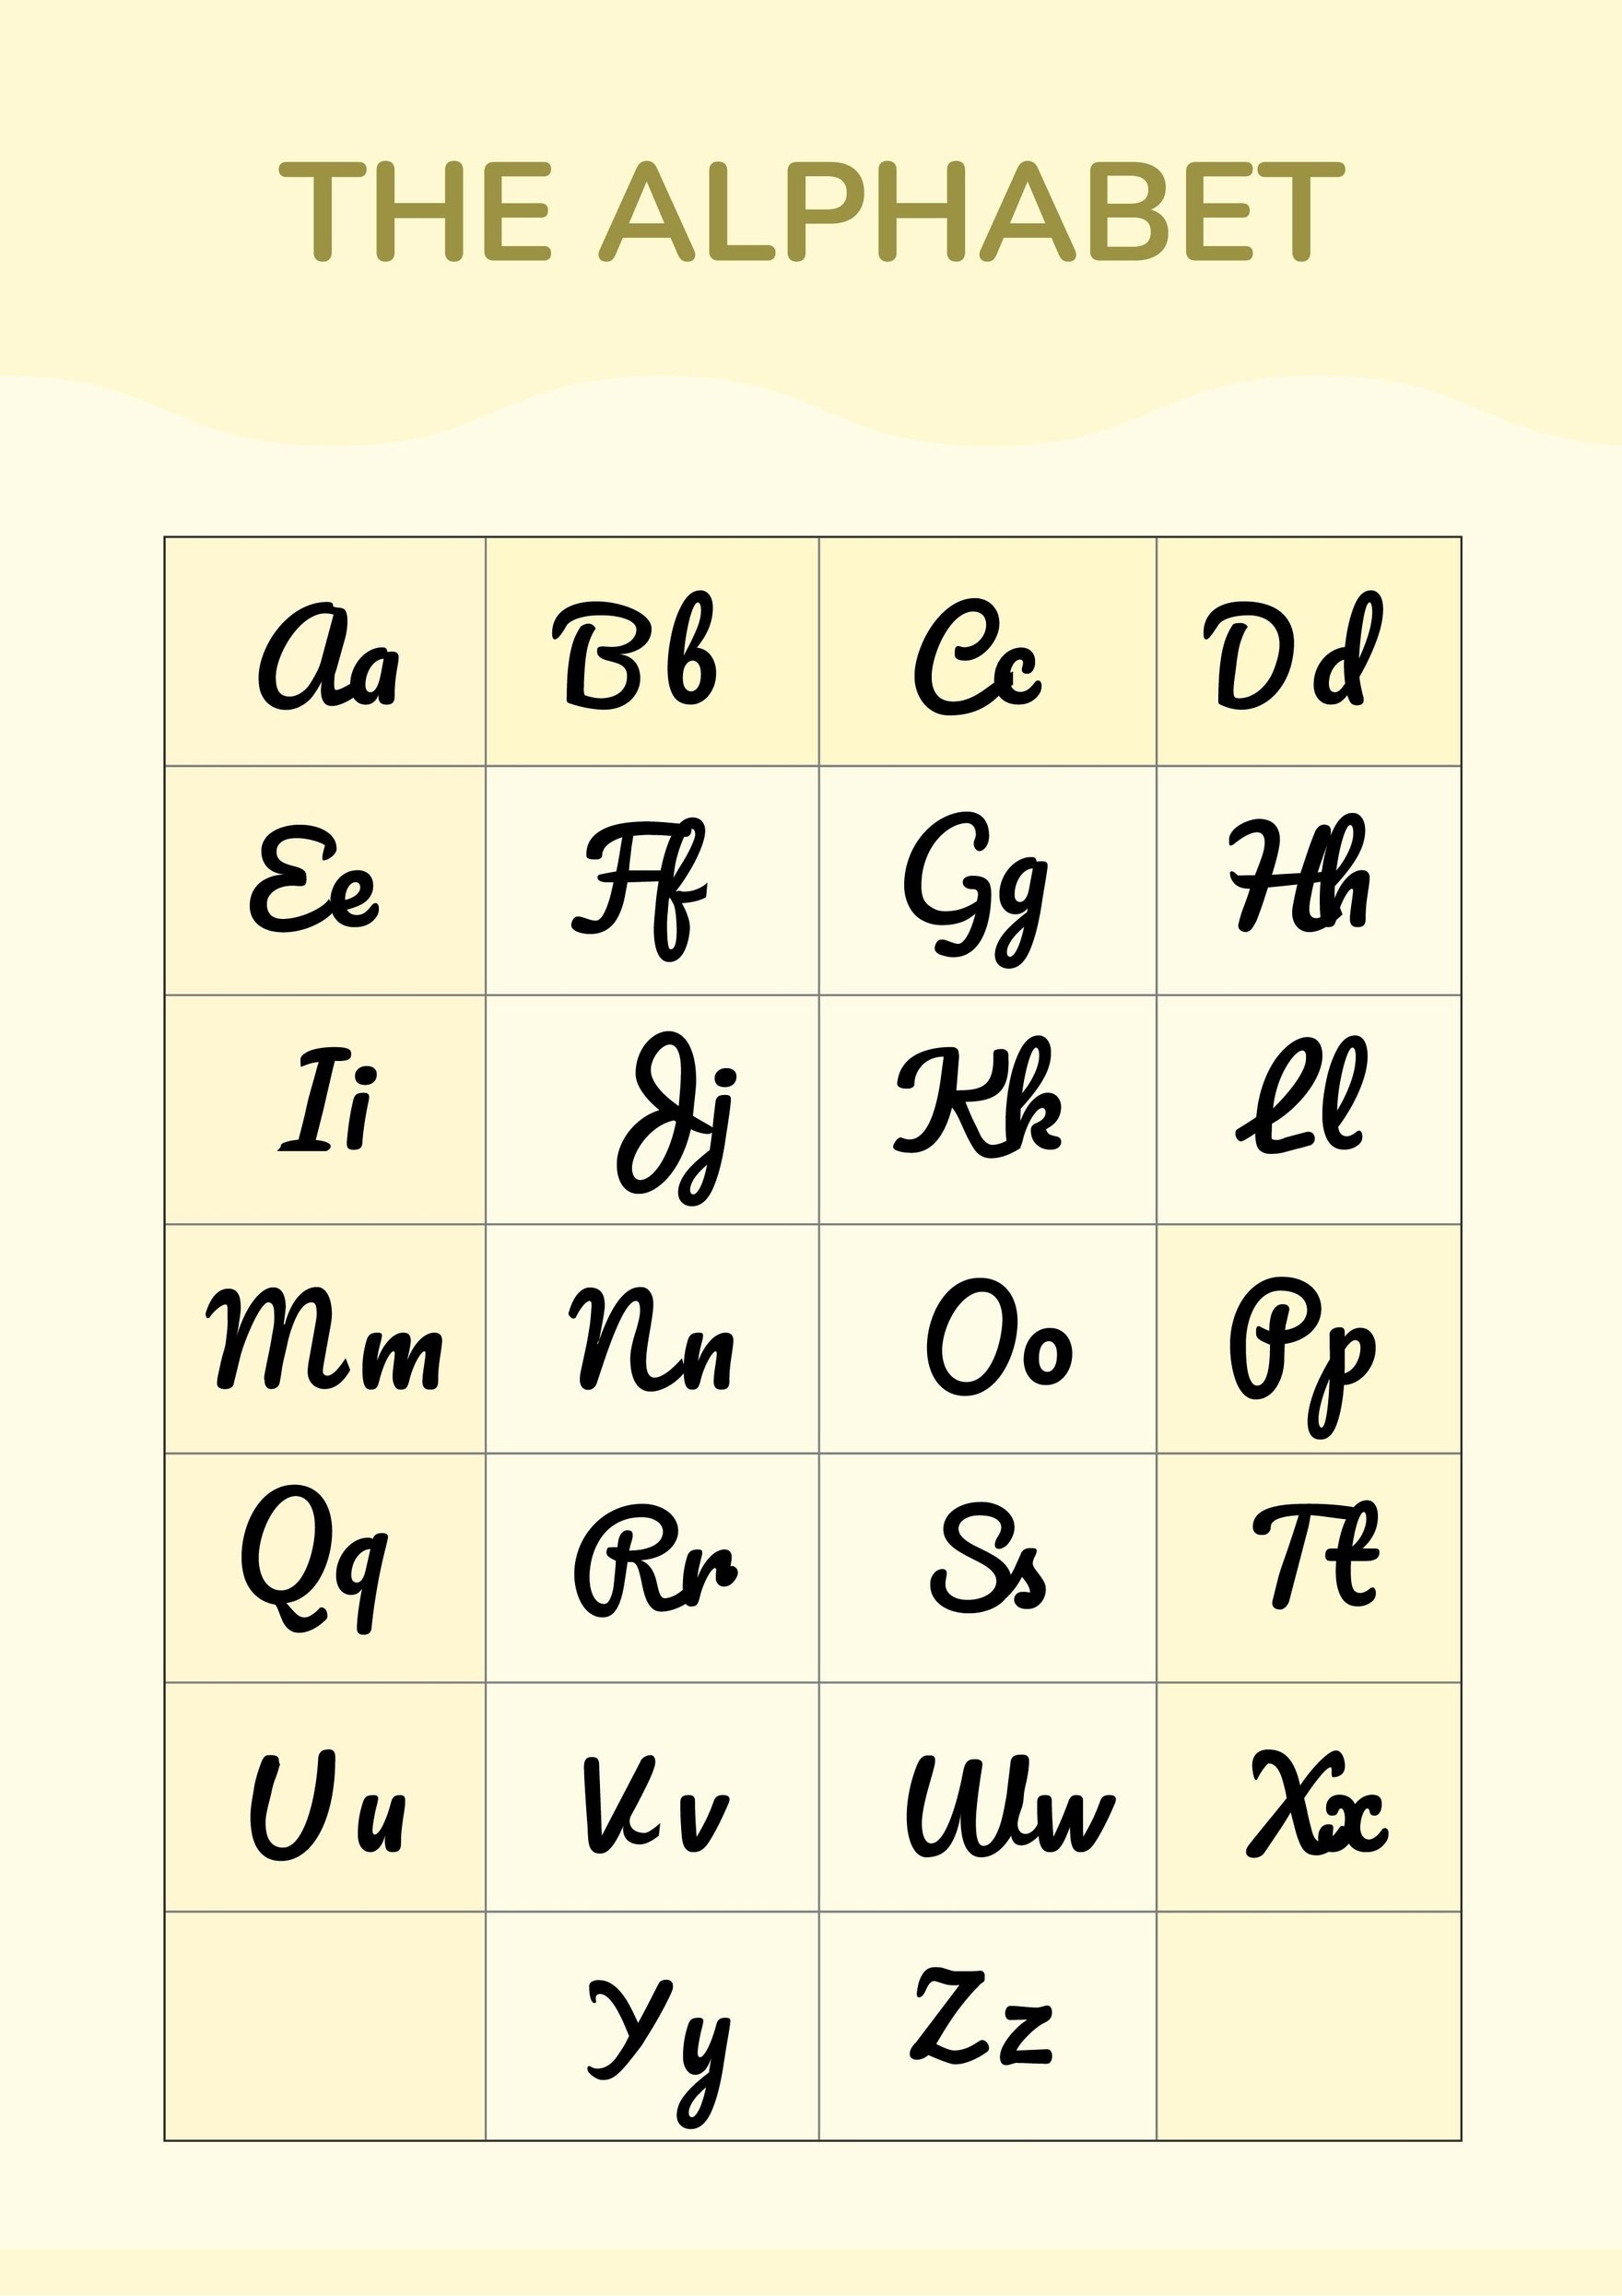 cursive letters chart